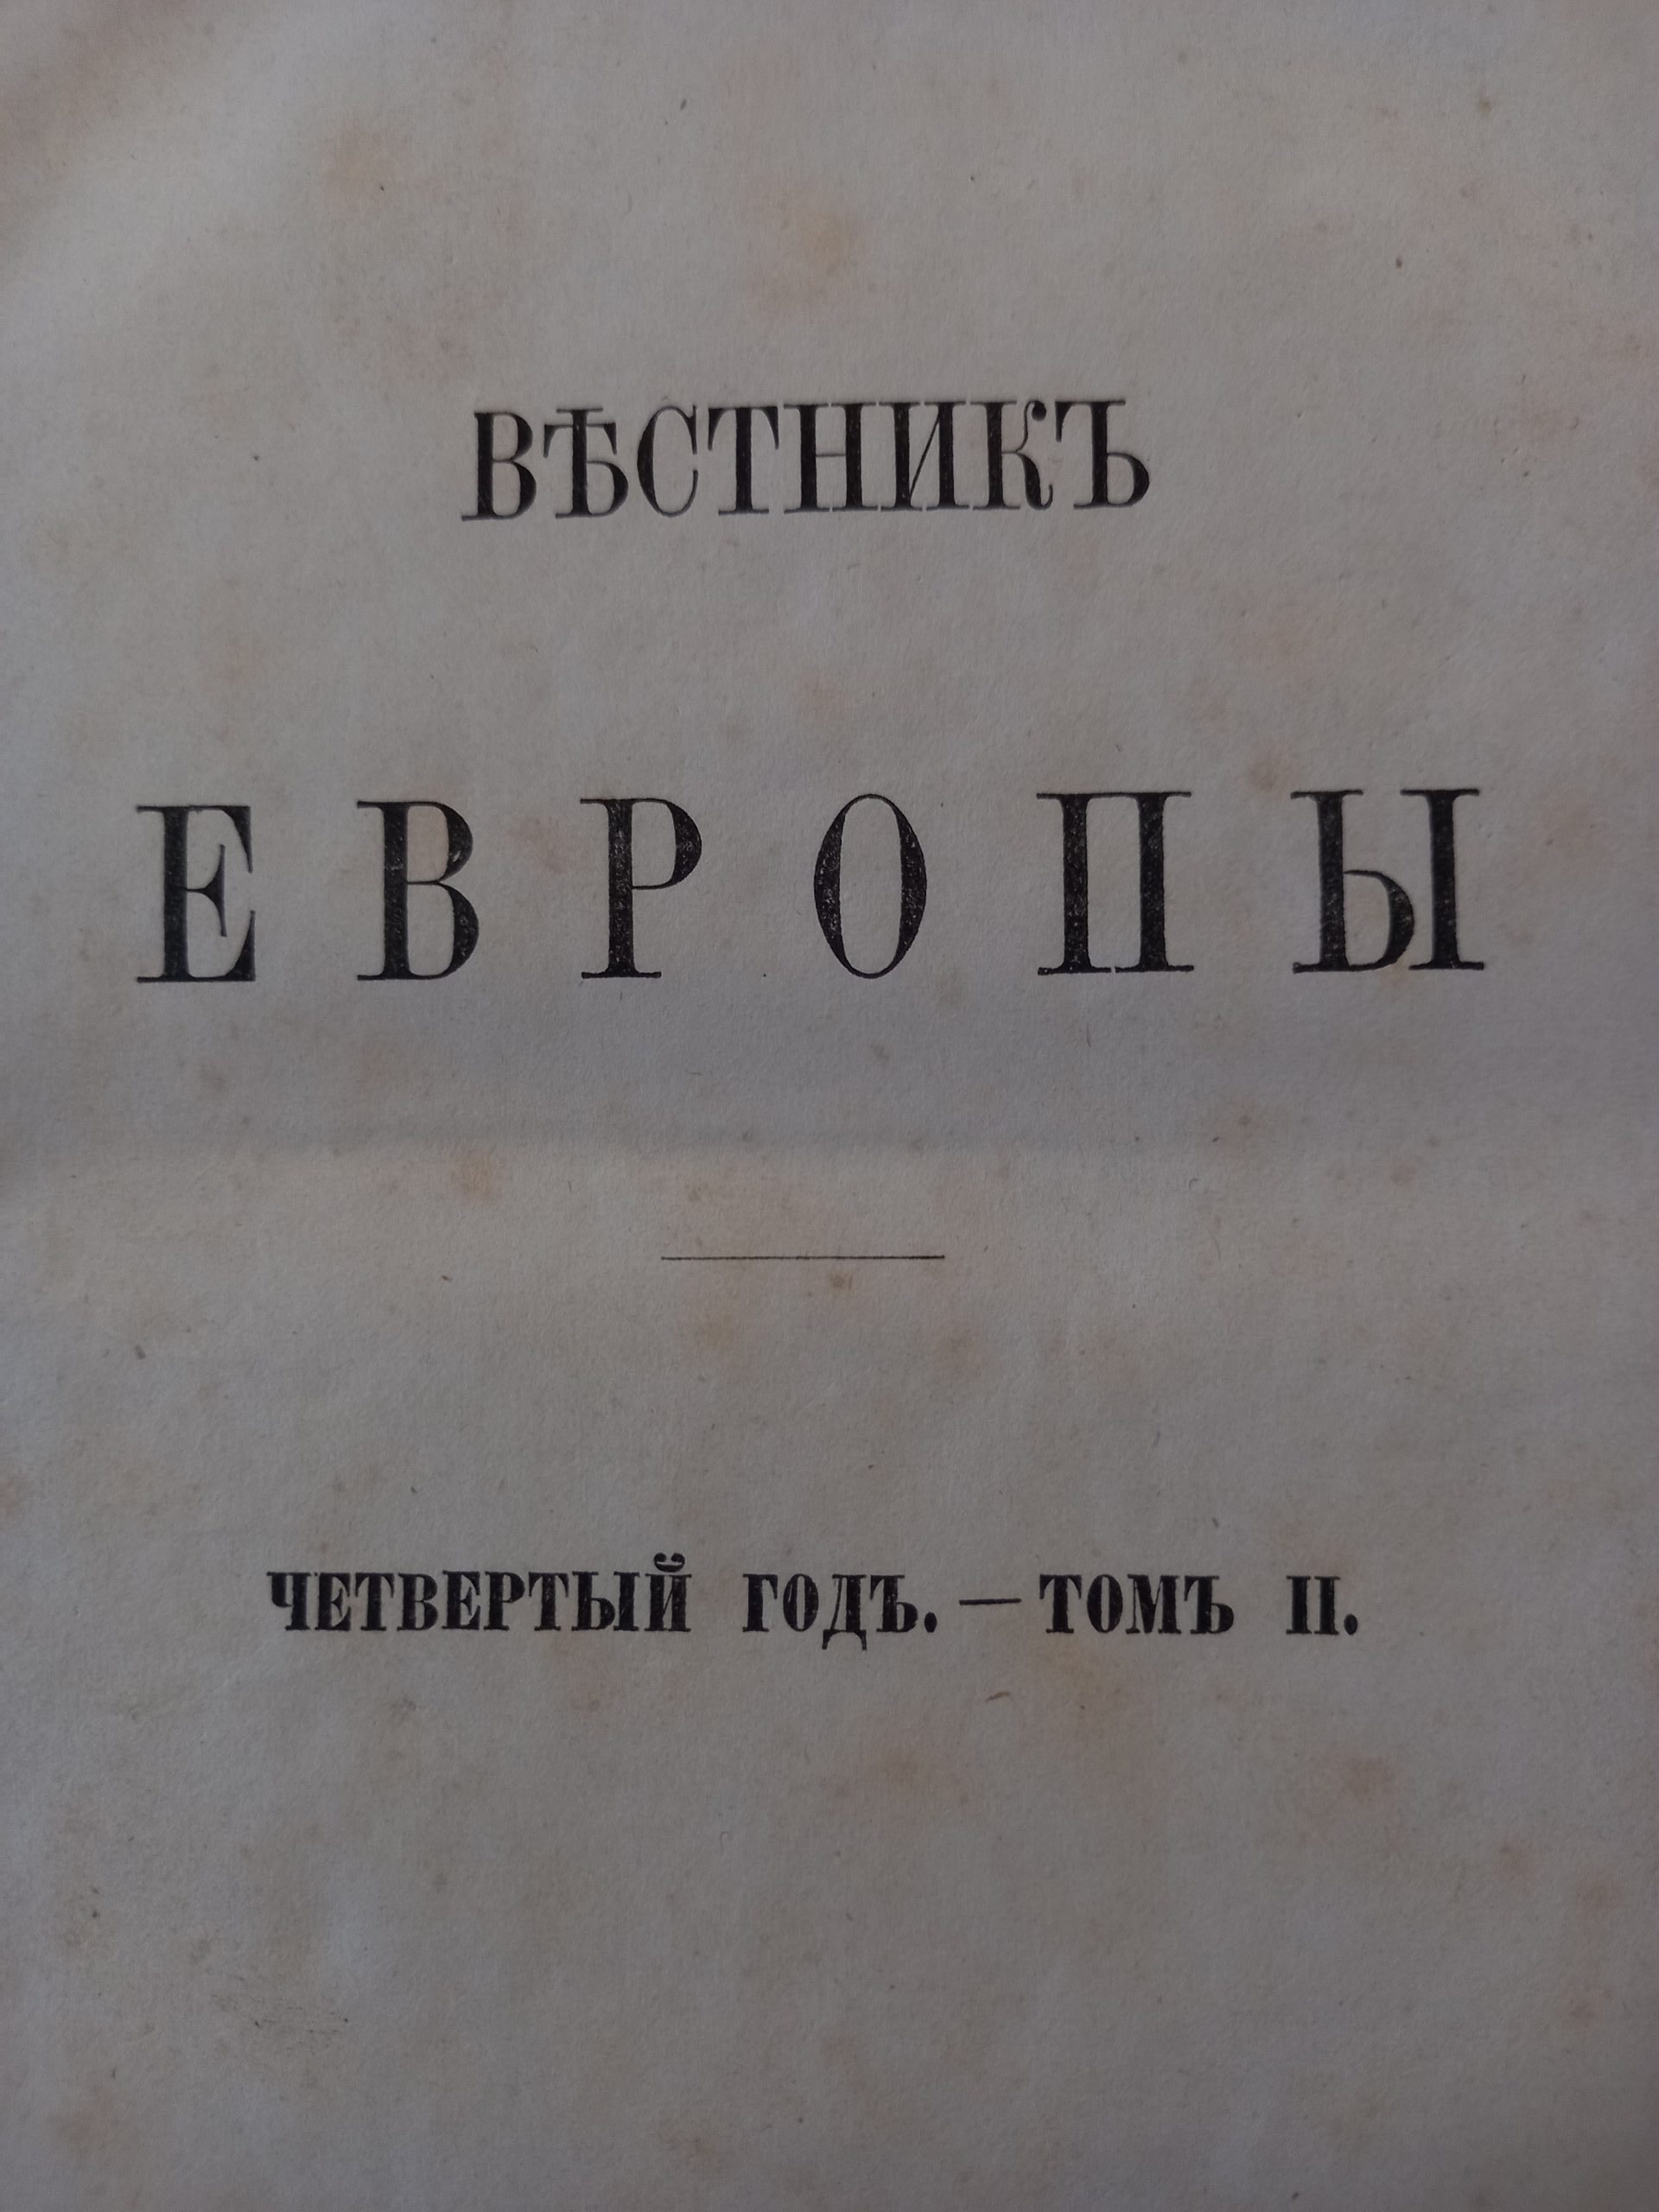 Первая публикация «Воспоминаний о Белинском» И. С. Тургенева